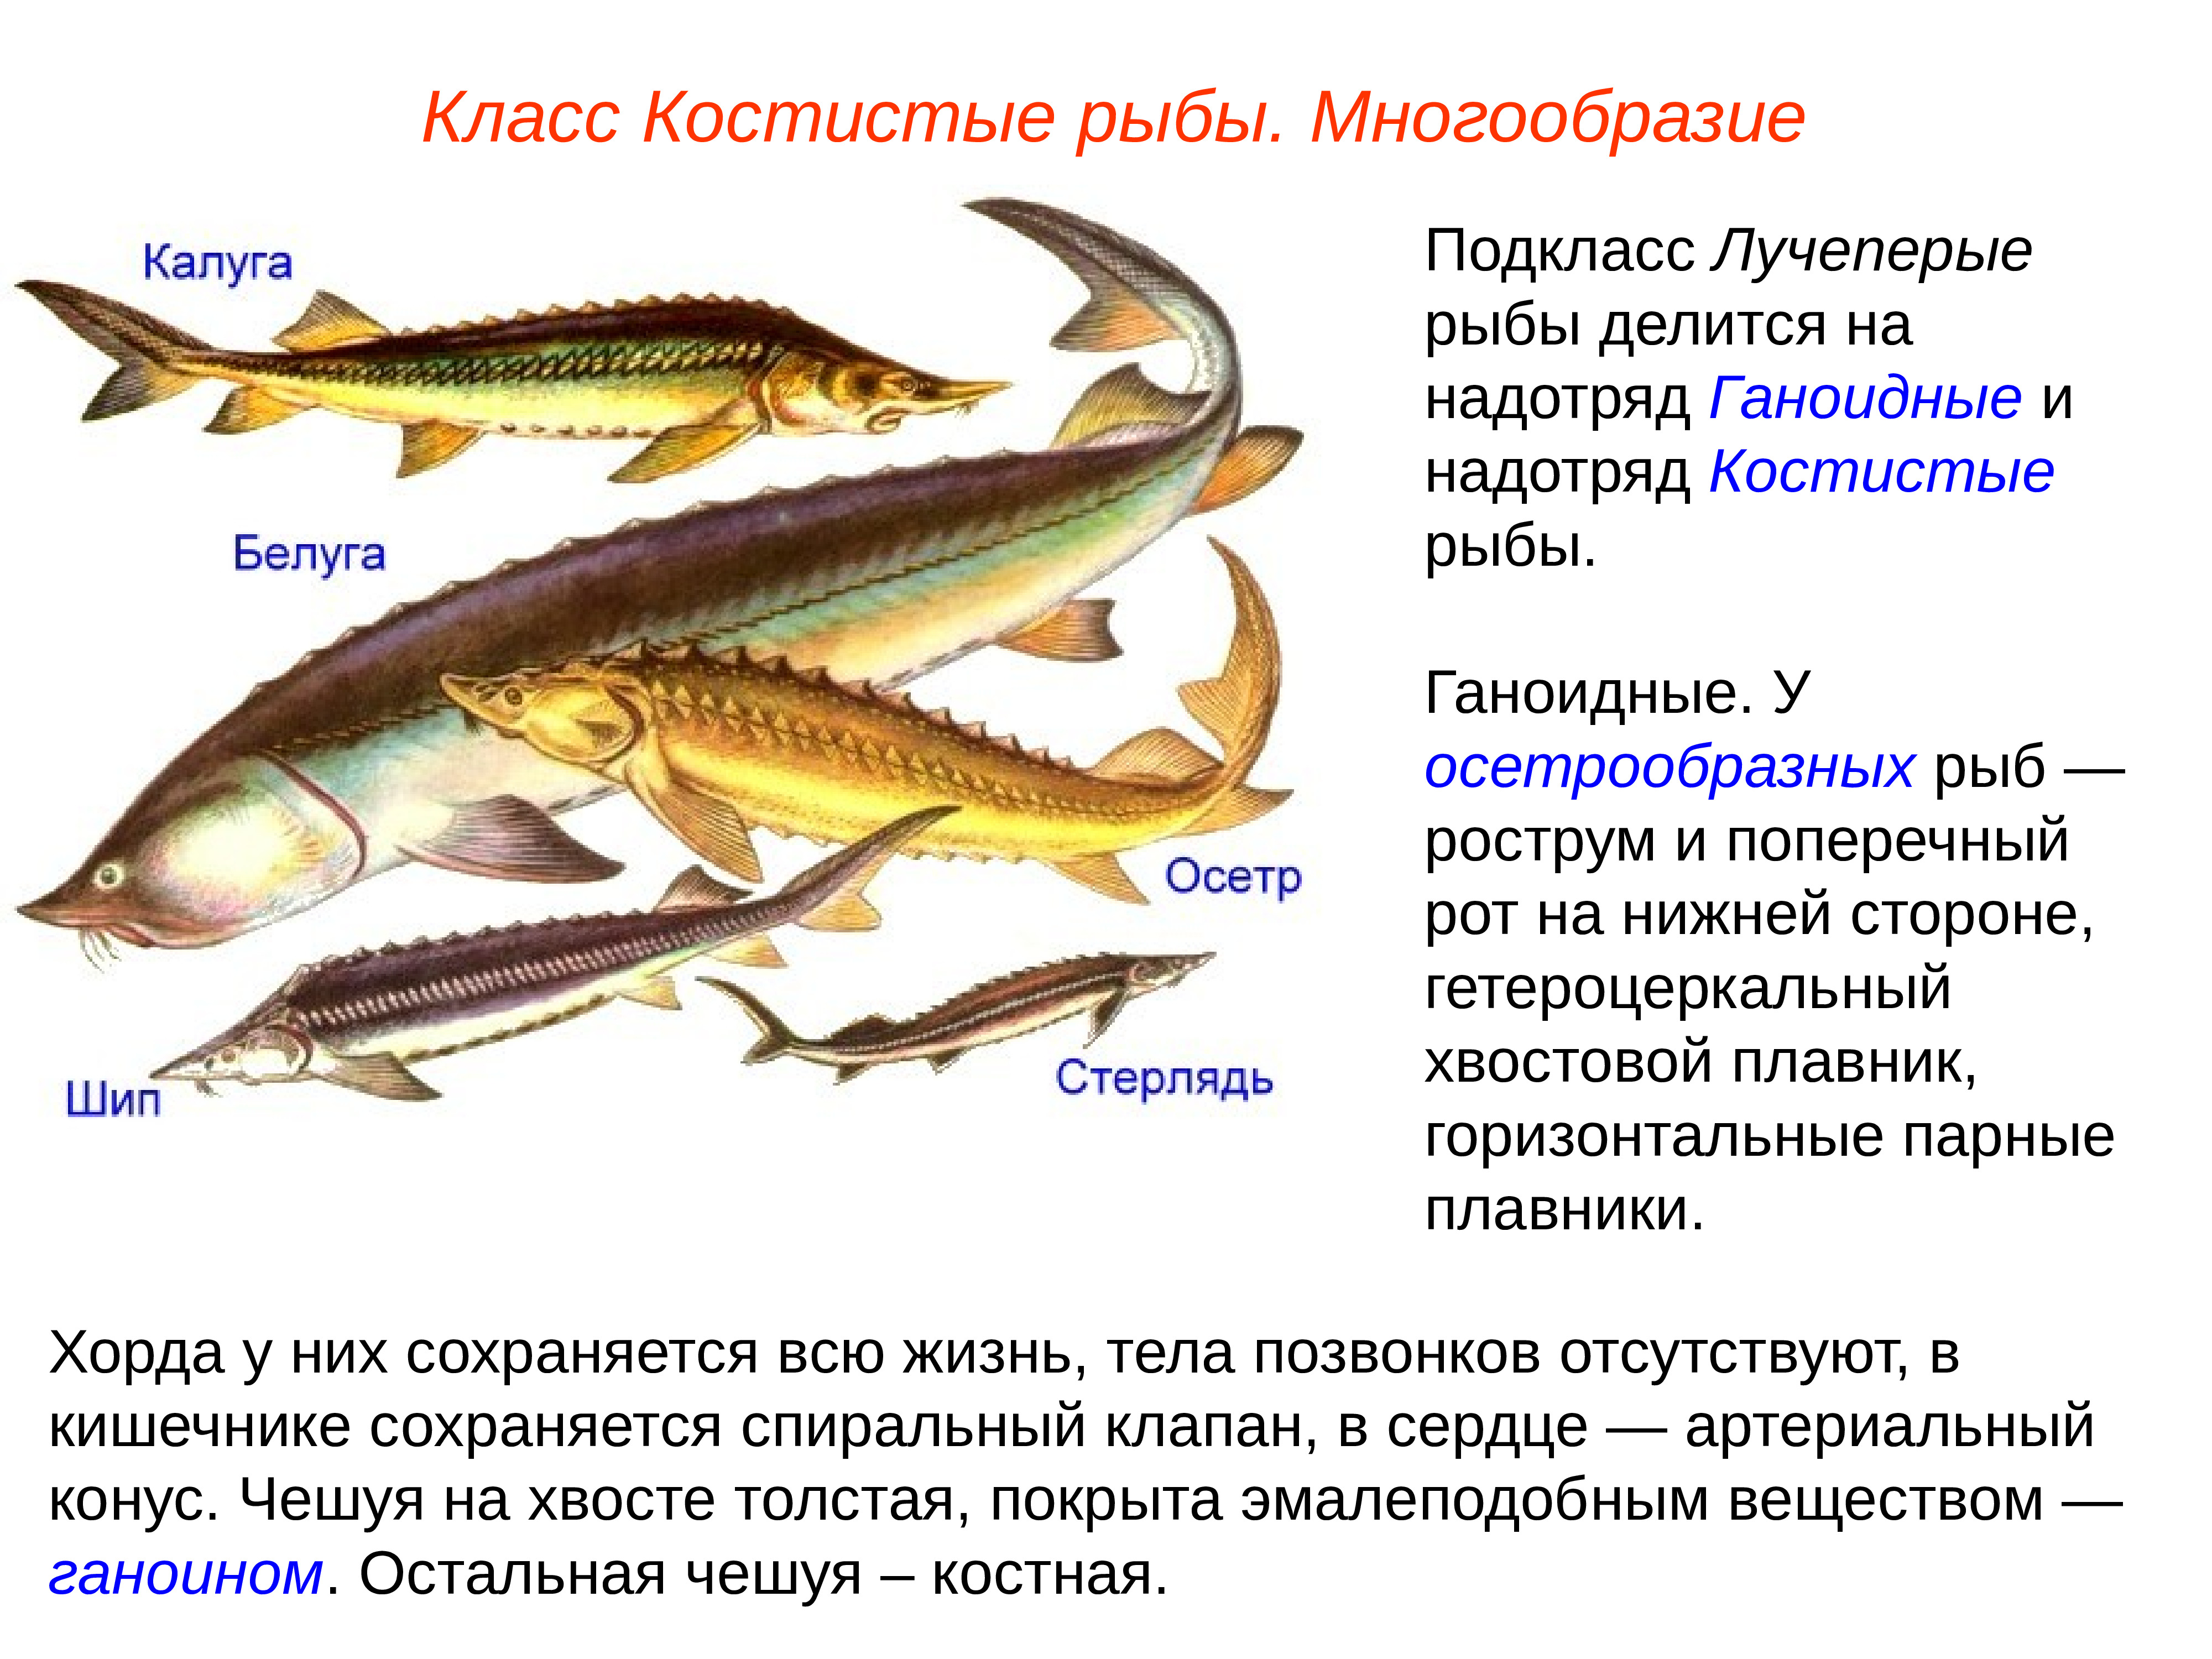 Какие рыбы относятся к классу костные